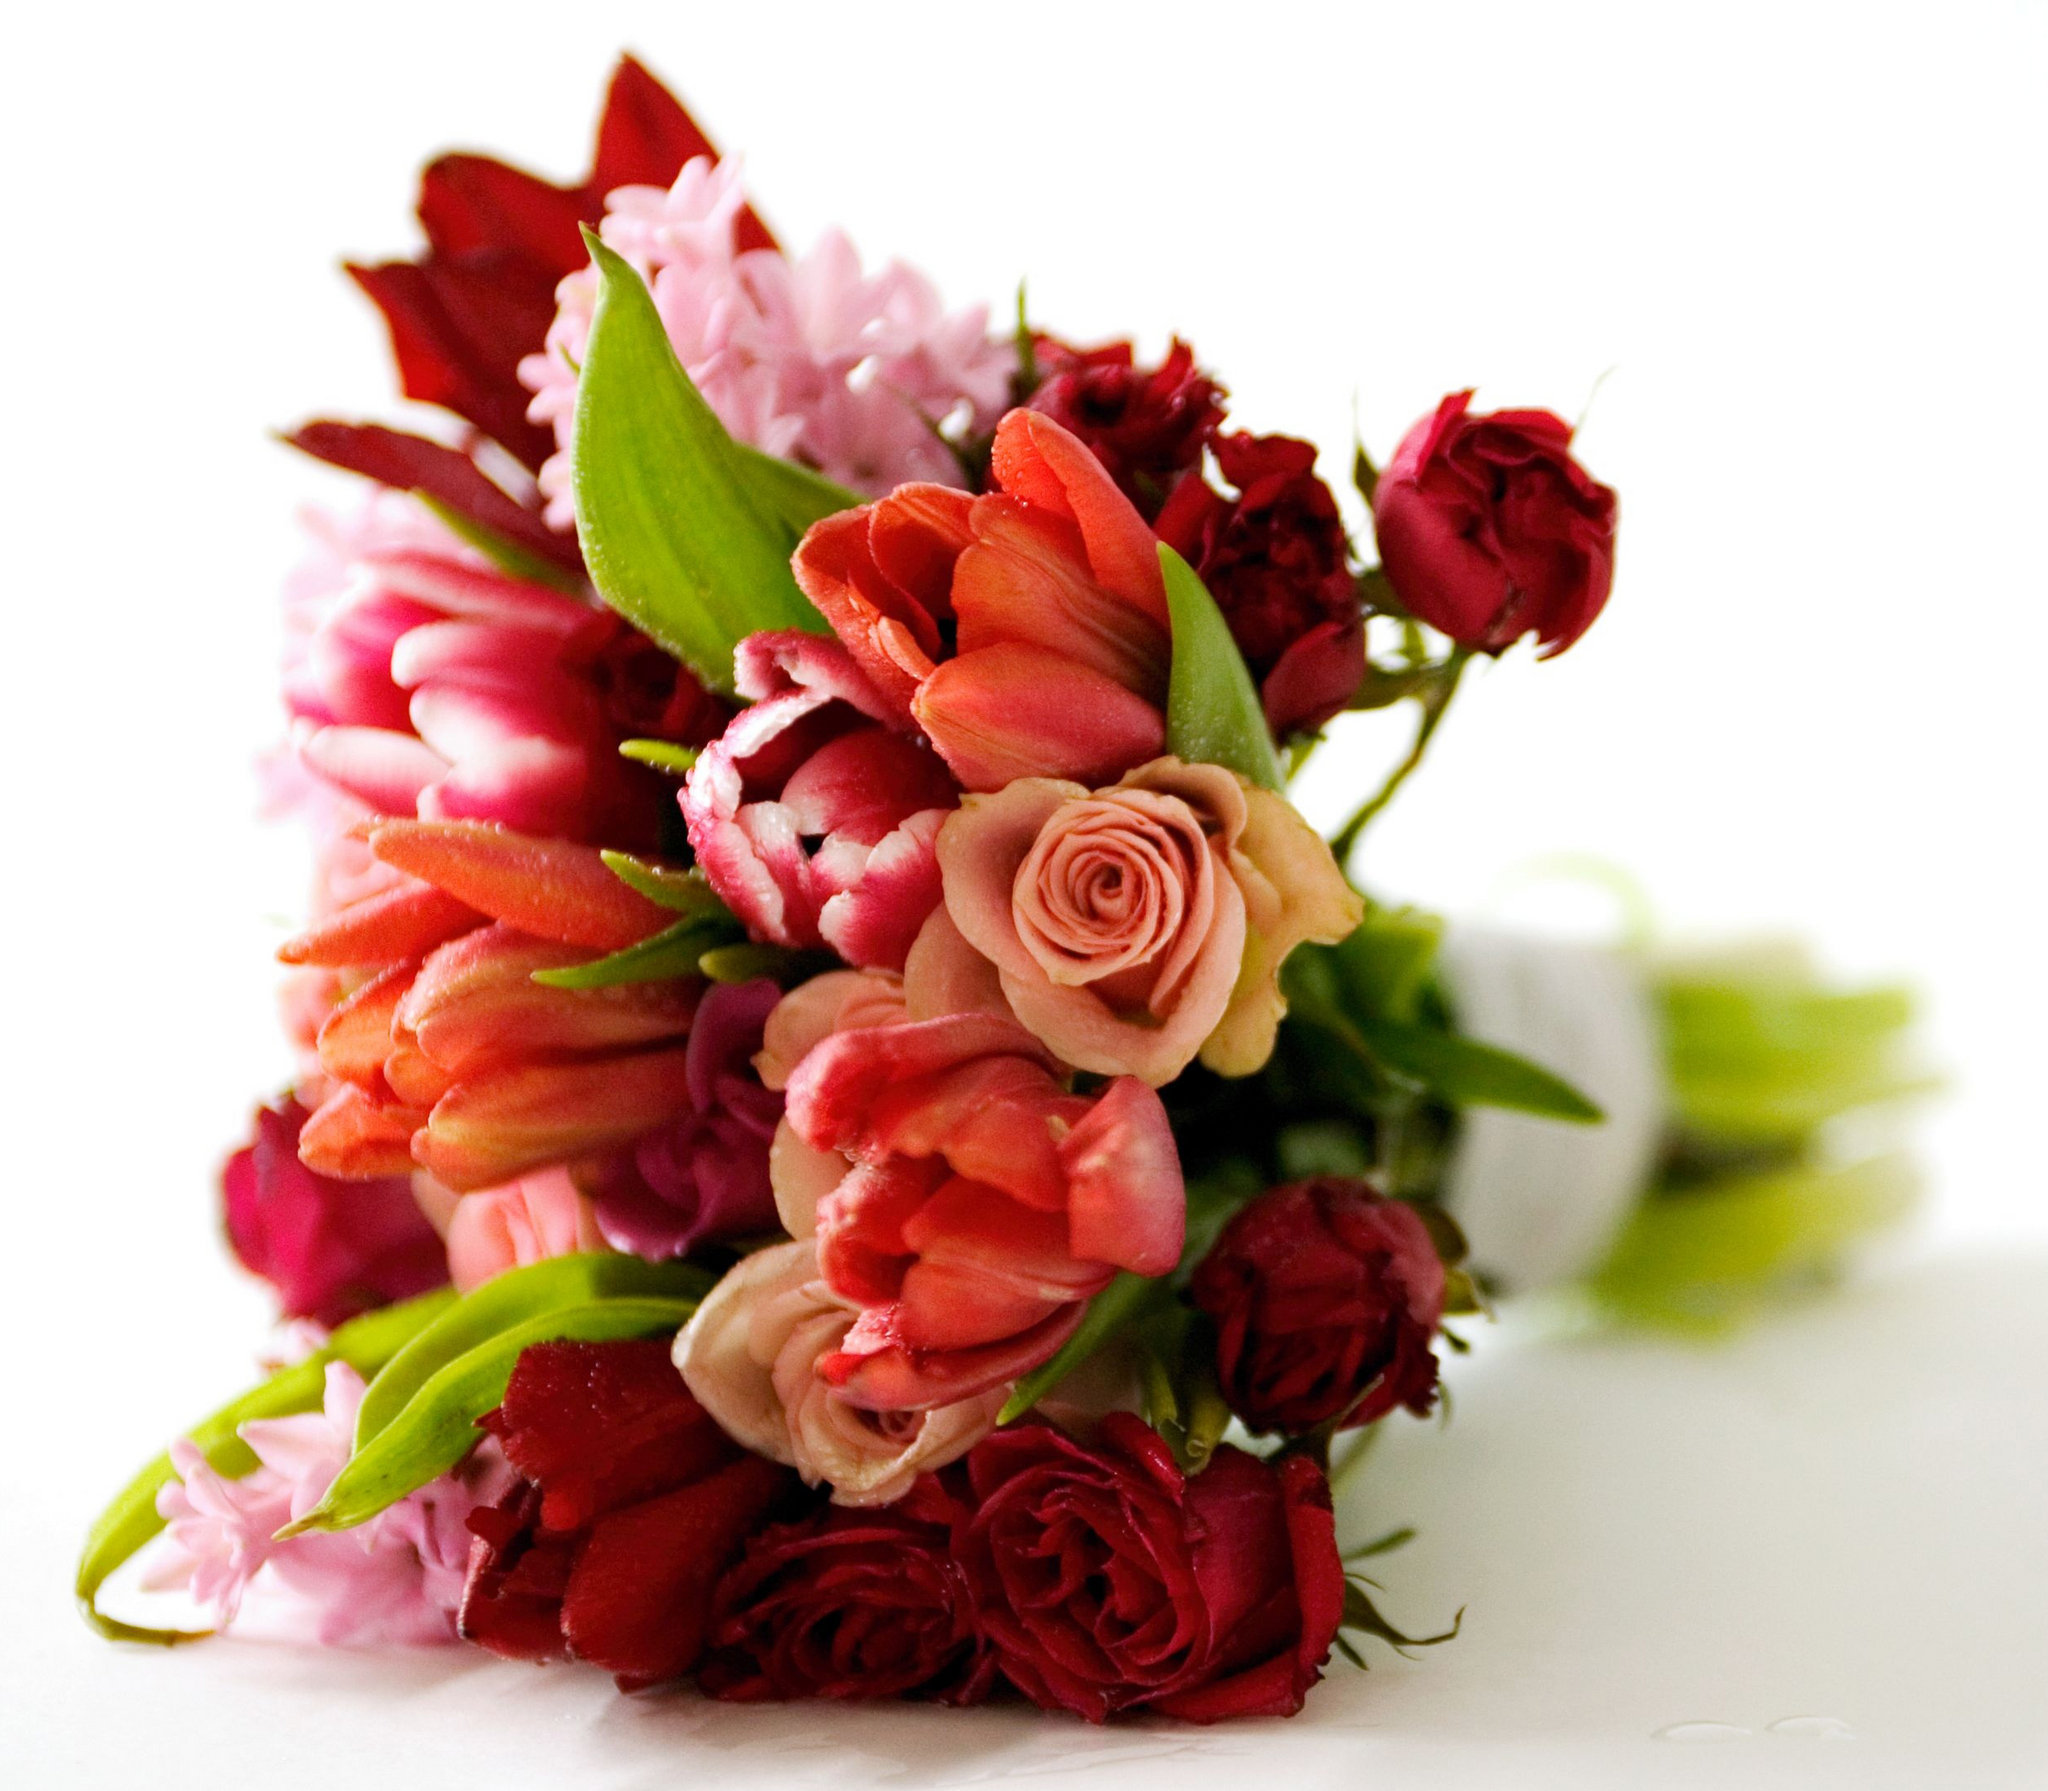 Designer's Choice Flower Bouquet - Pesche's